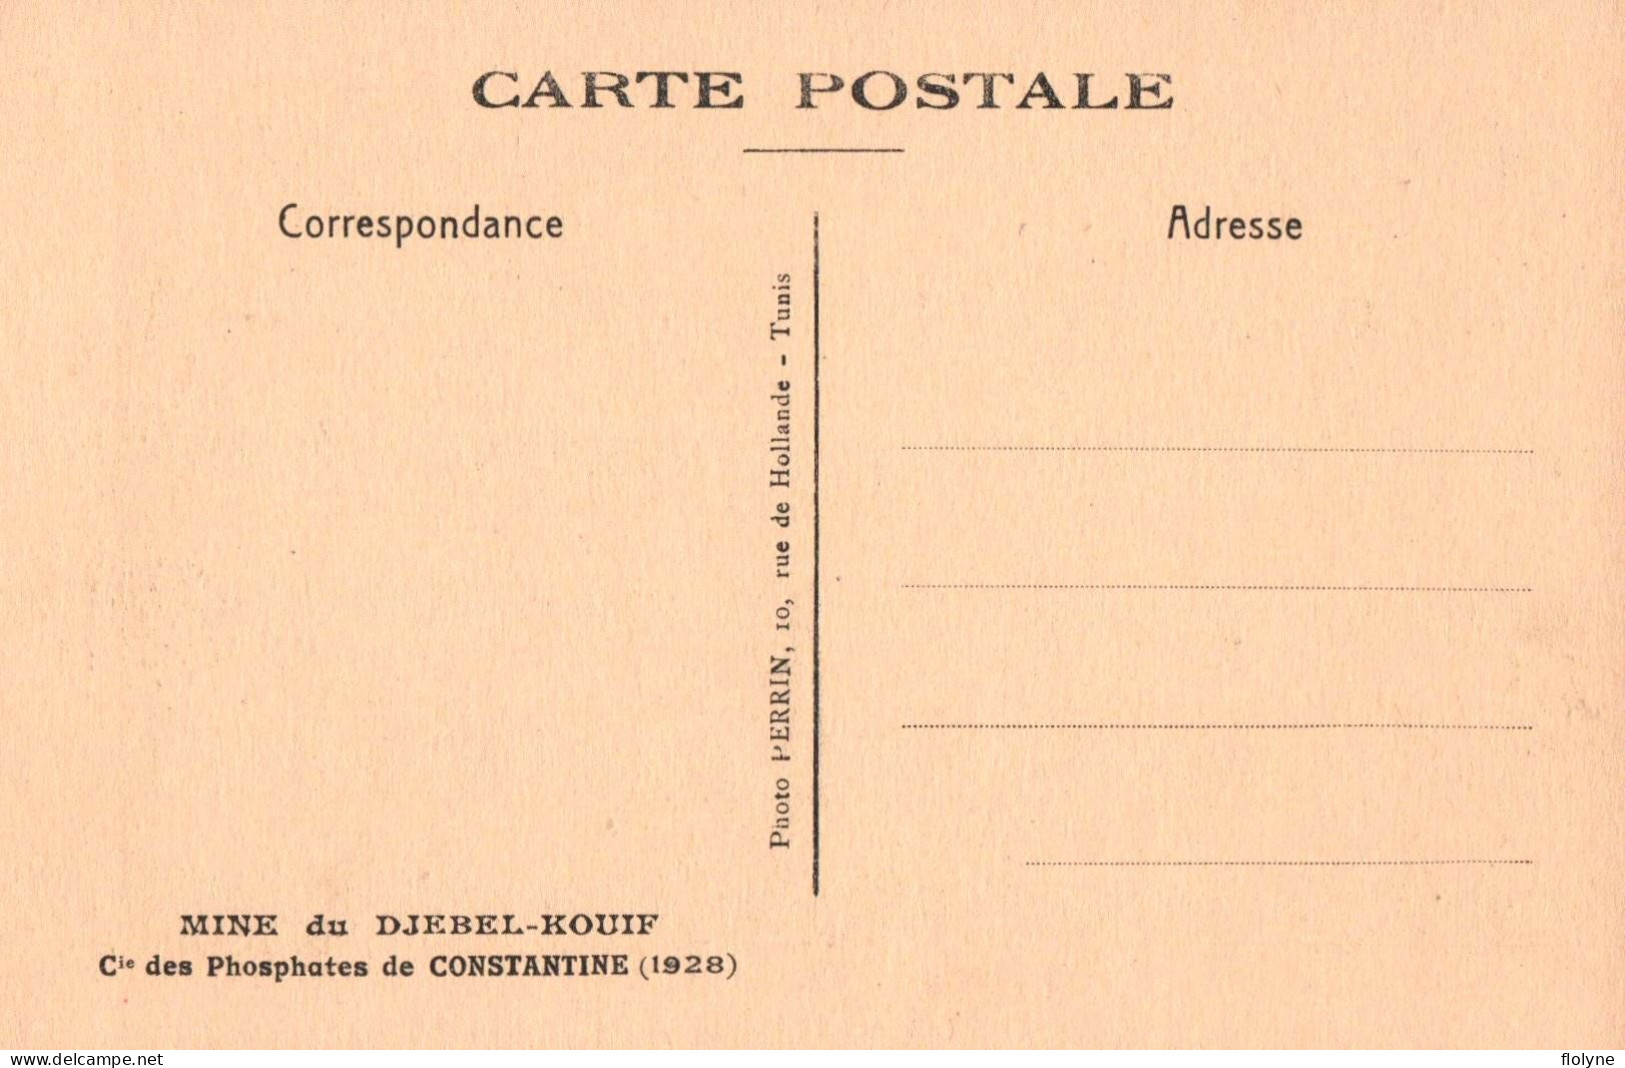 constantine - série de 17 cpa - Mine du DJEBEL KOUIF , compagnie des phosphates - 1928 - algérie algeria